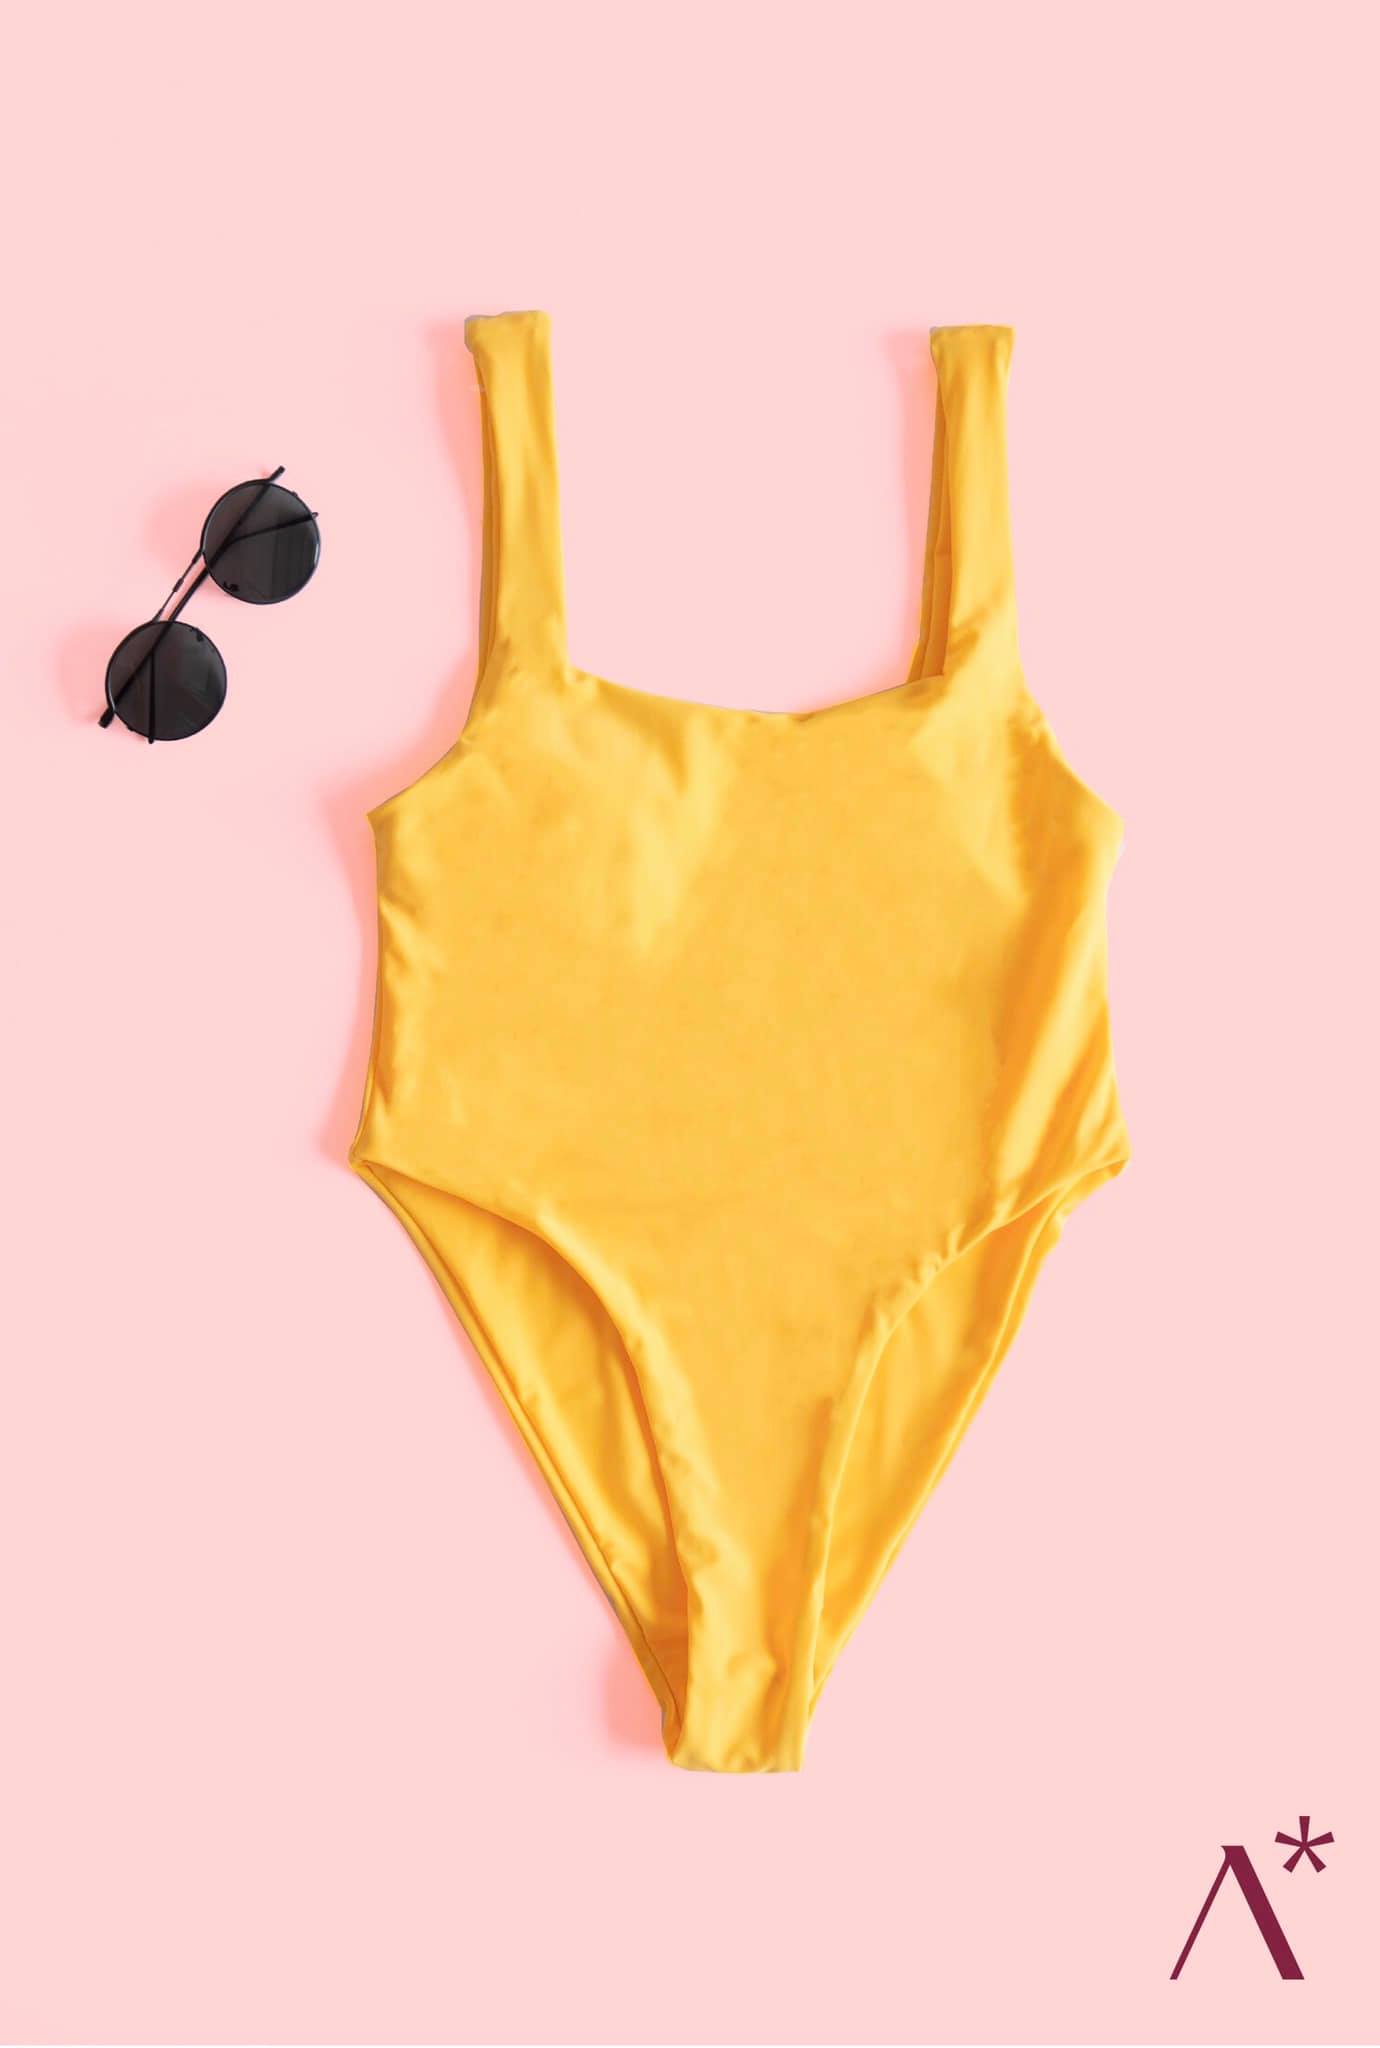 The Yellow Bikini